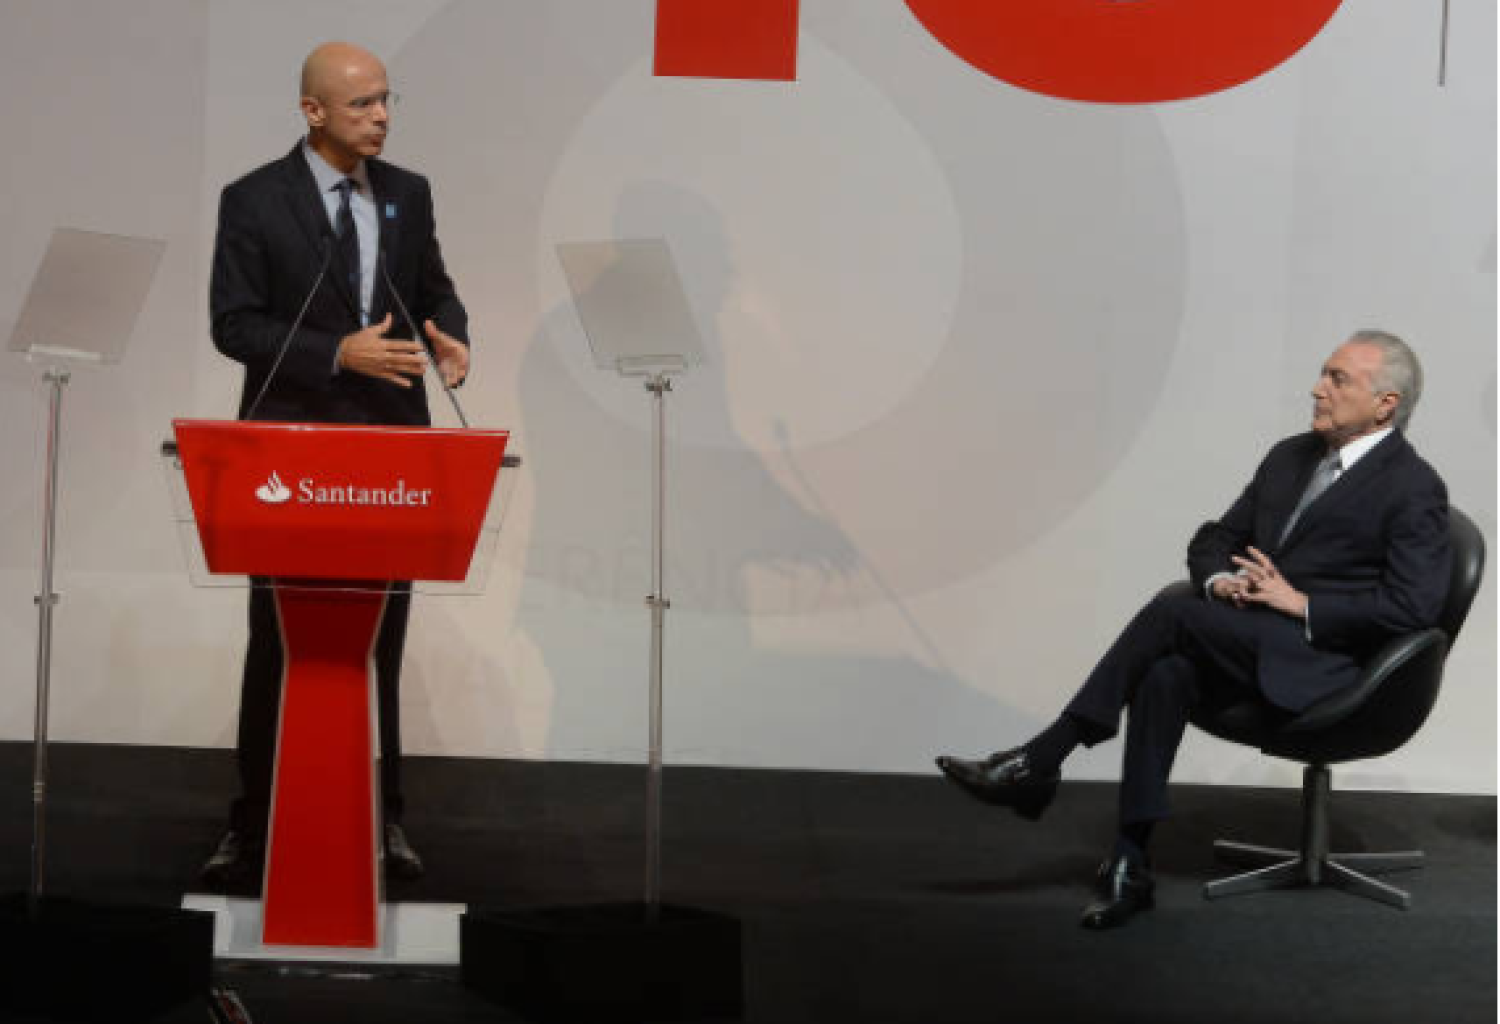 Executivos do Santander querem lucrar tirando direito dos trabalhadores